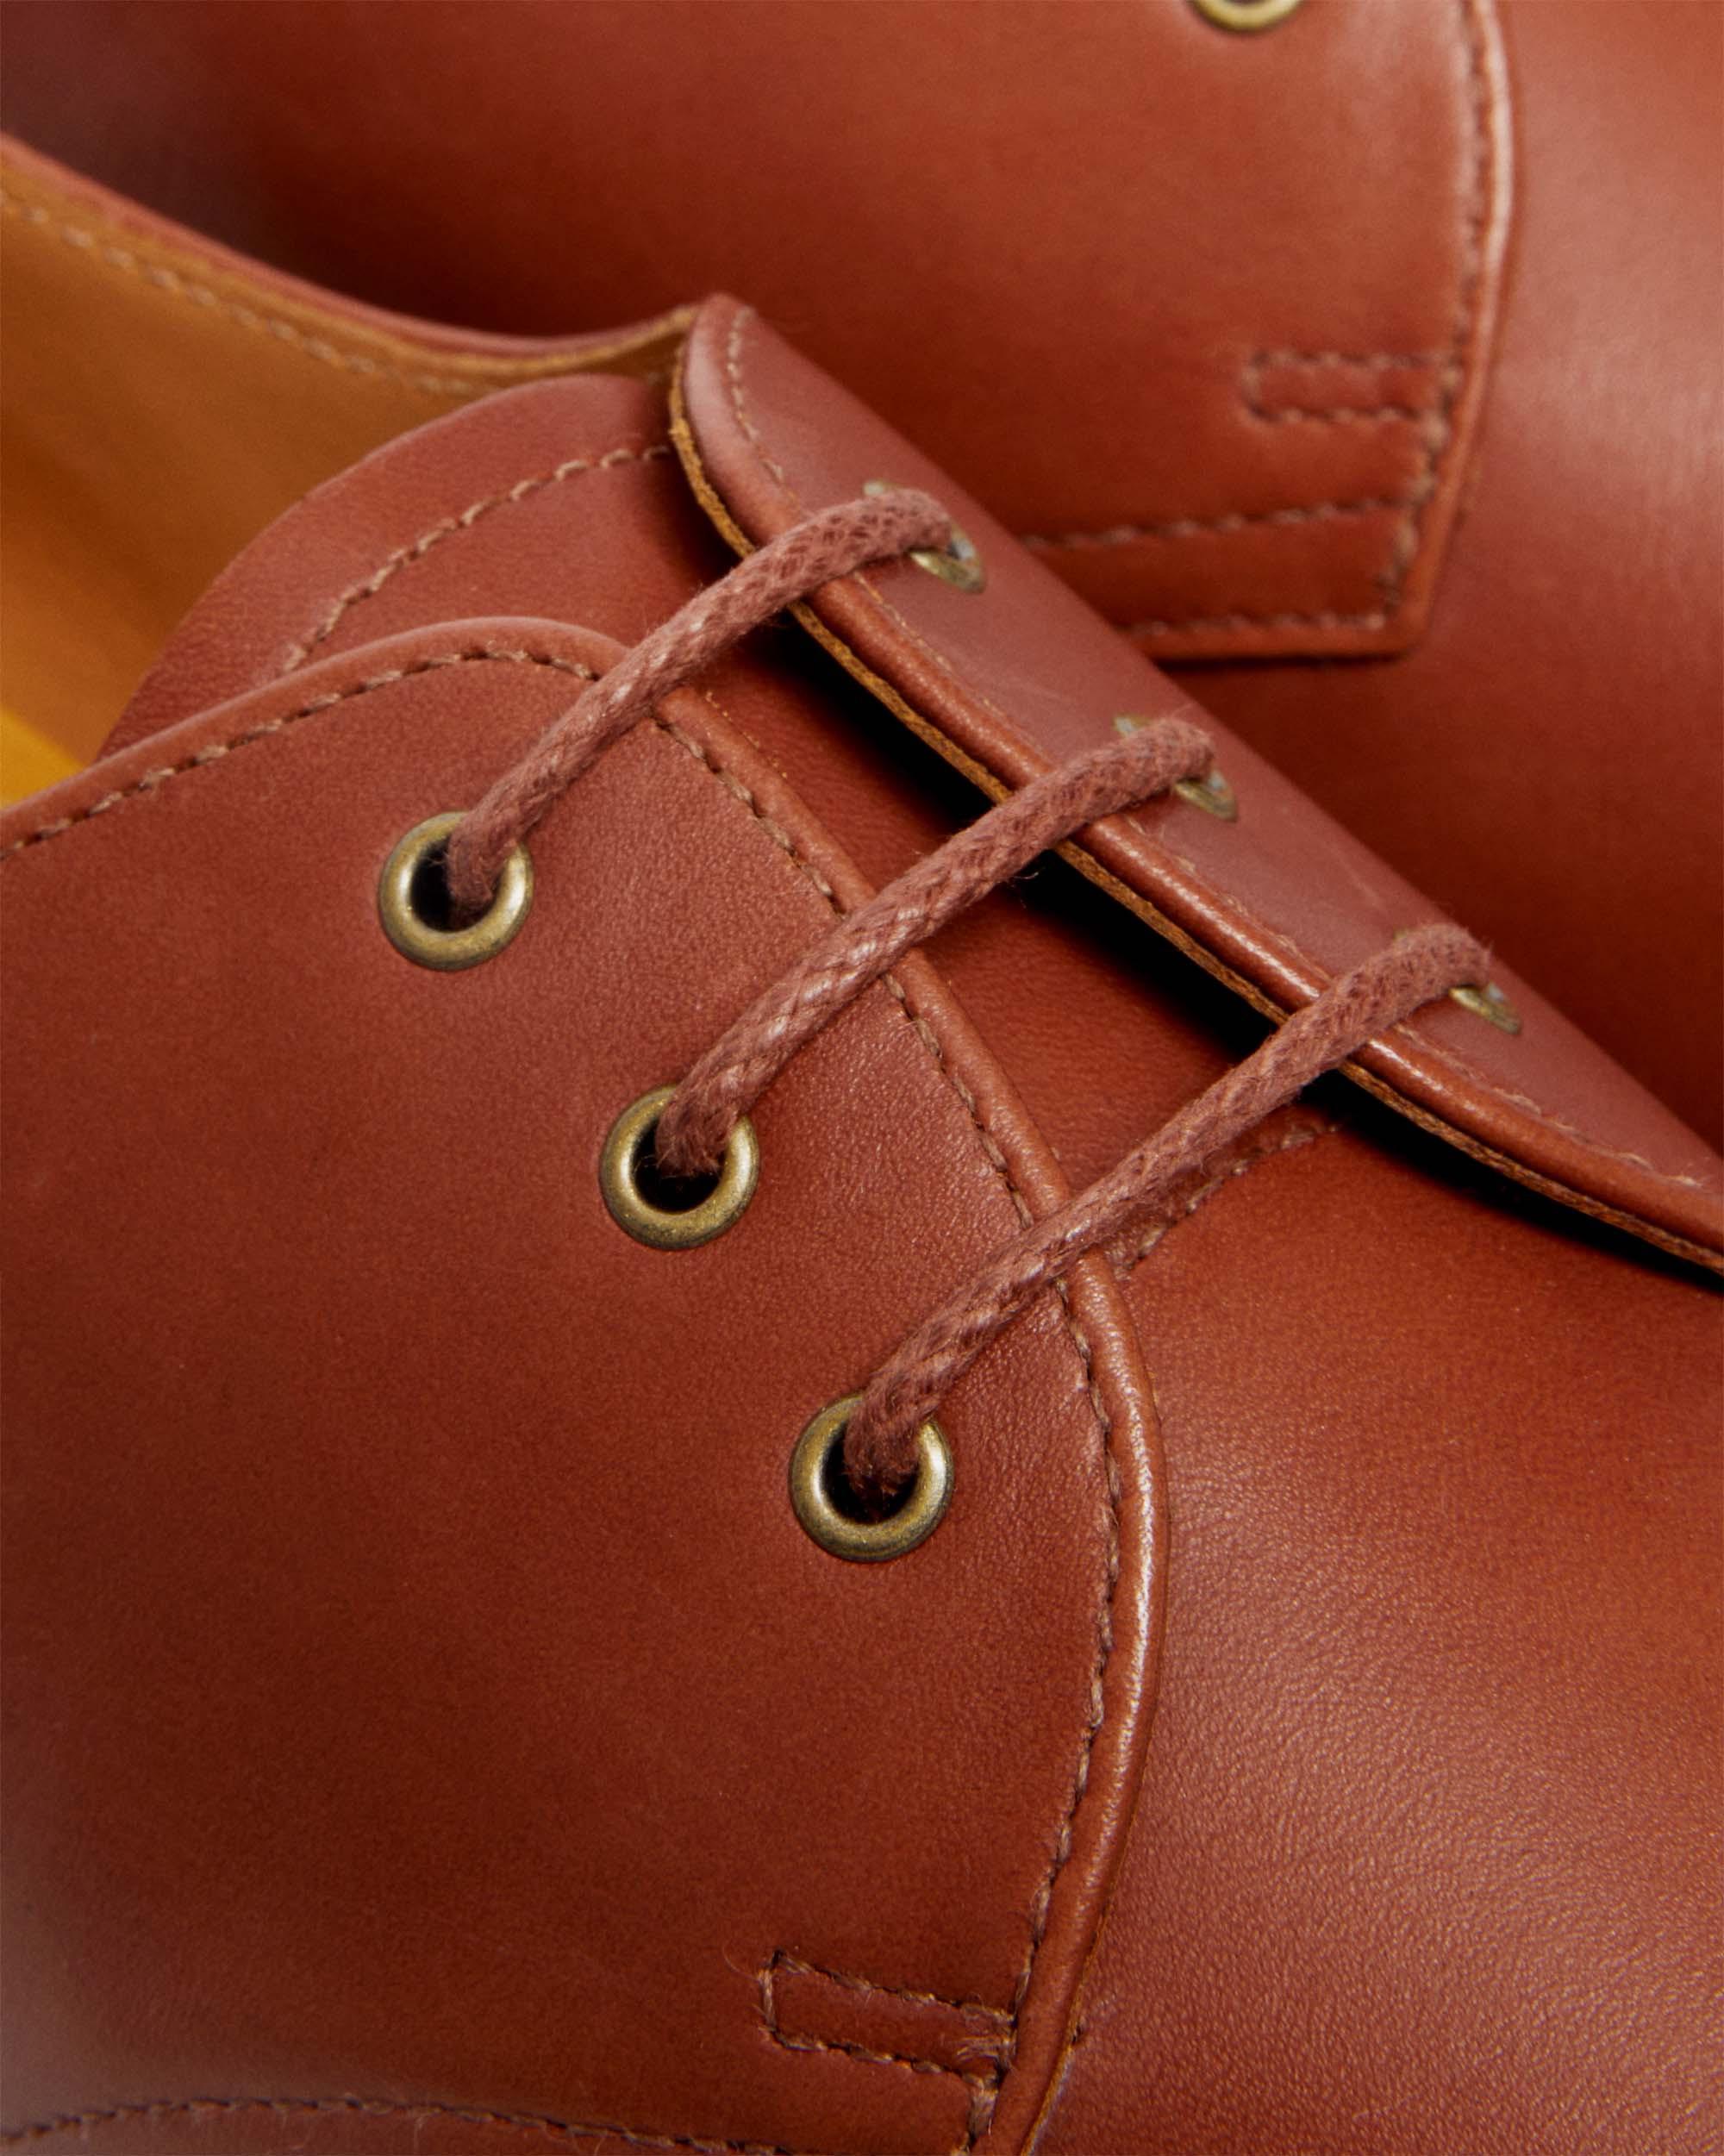 1461 Carrara Leather Shoes